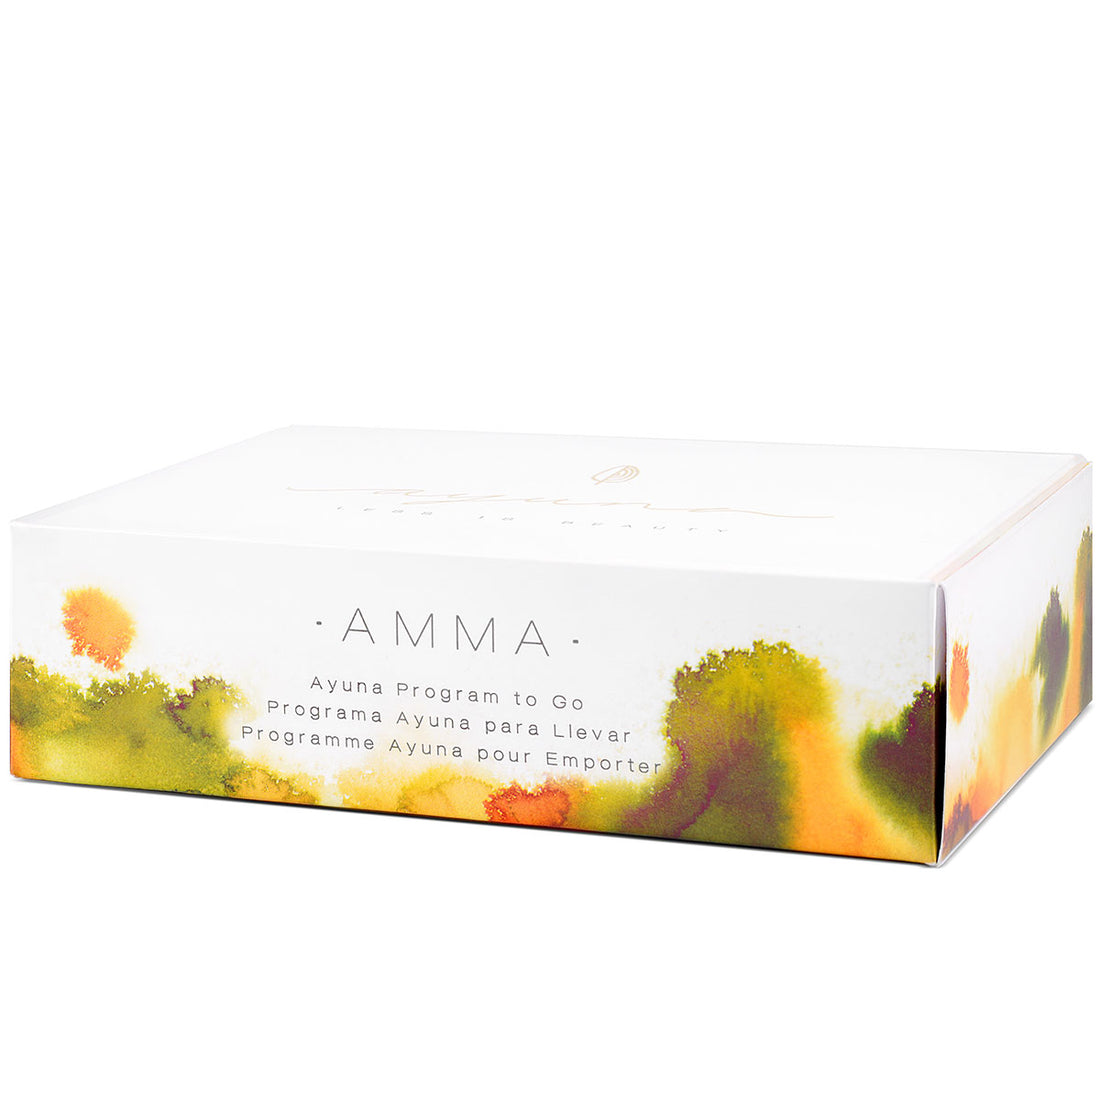 Set Ayuna Program to Go Light Amma: soap, cream, essence, conditioner, veil, facial treatment